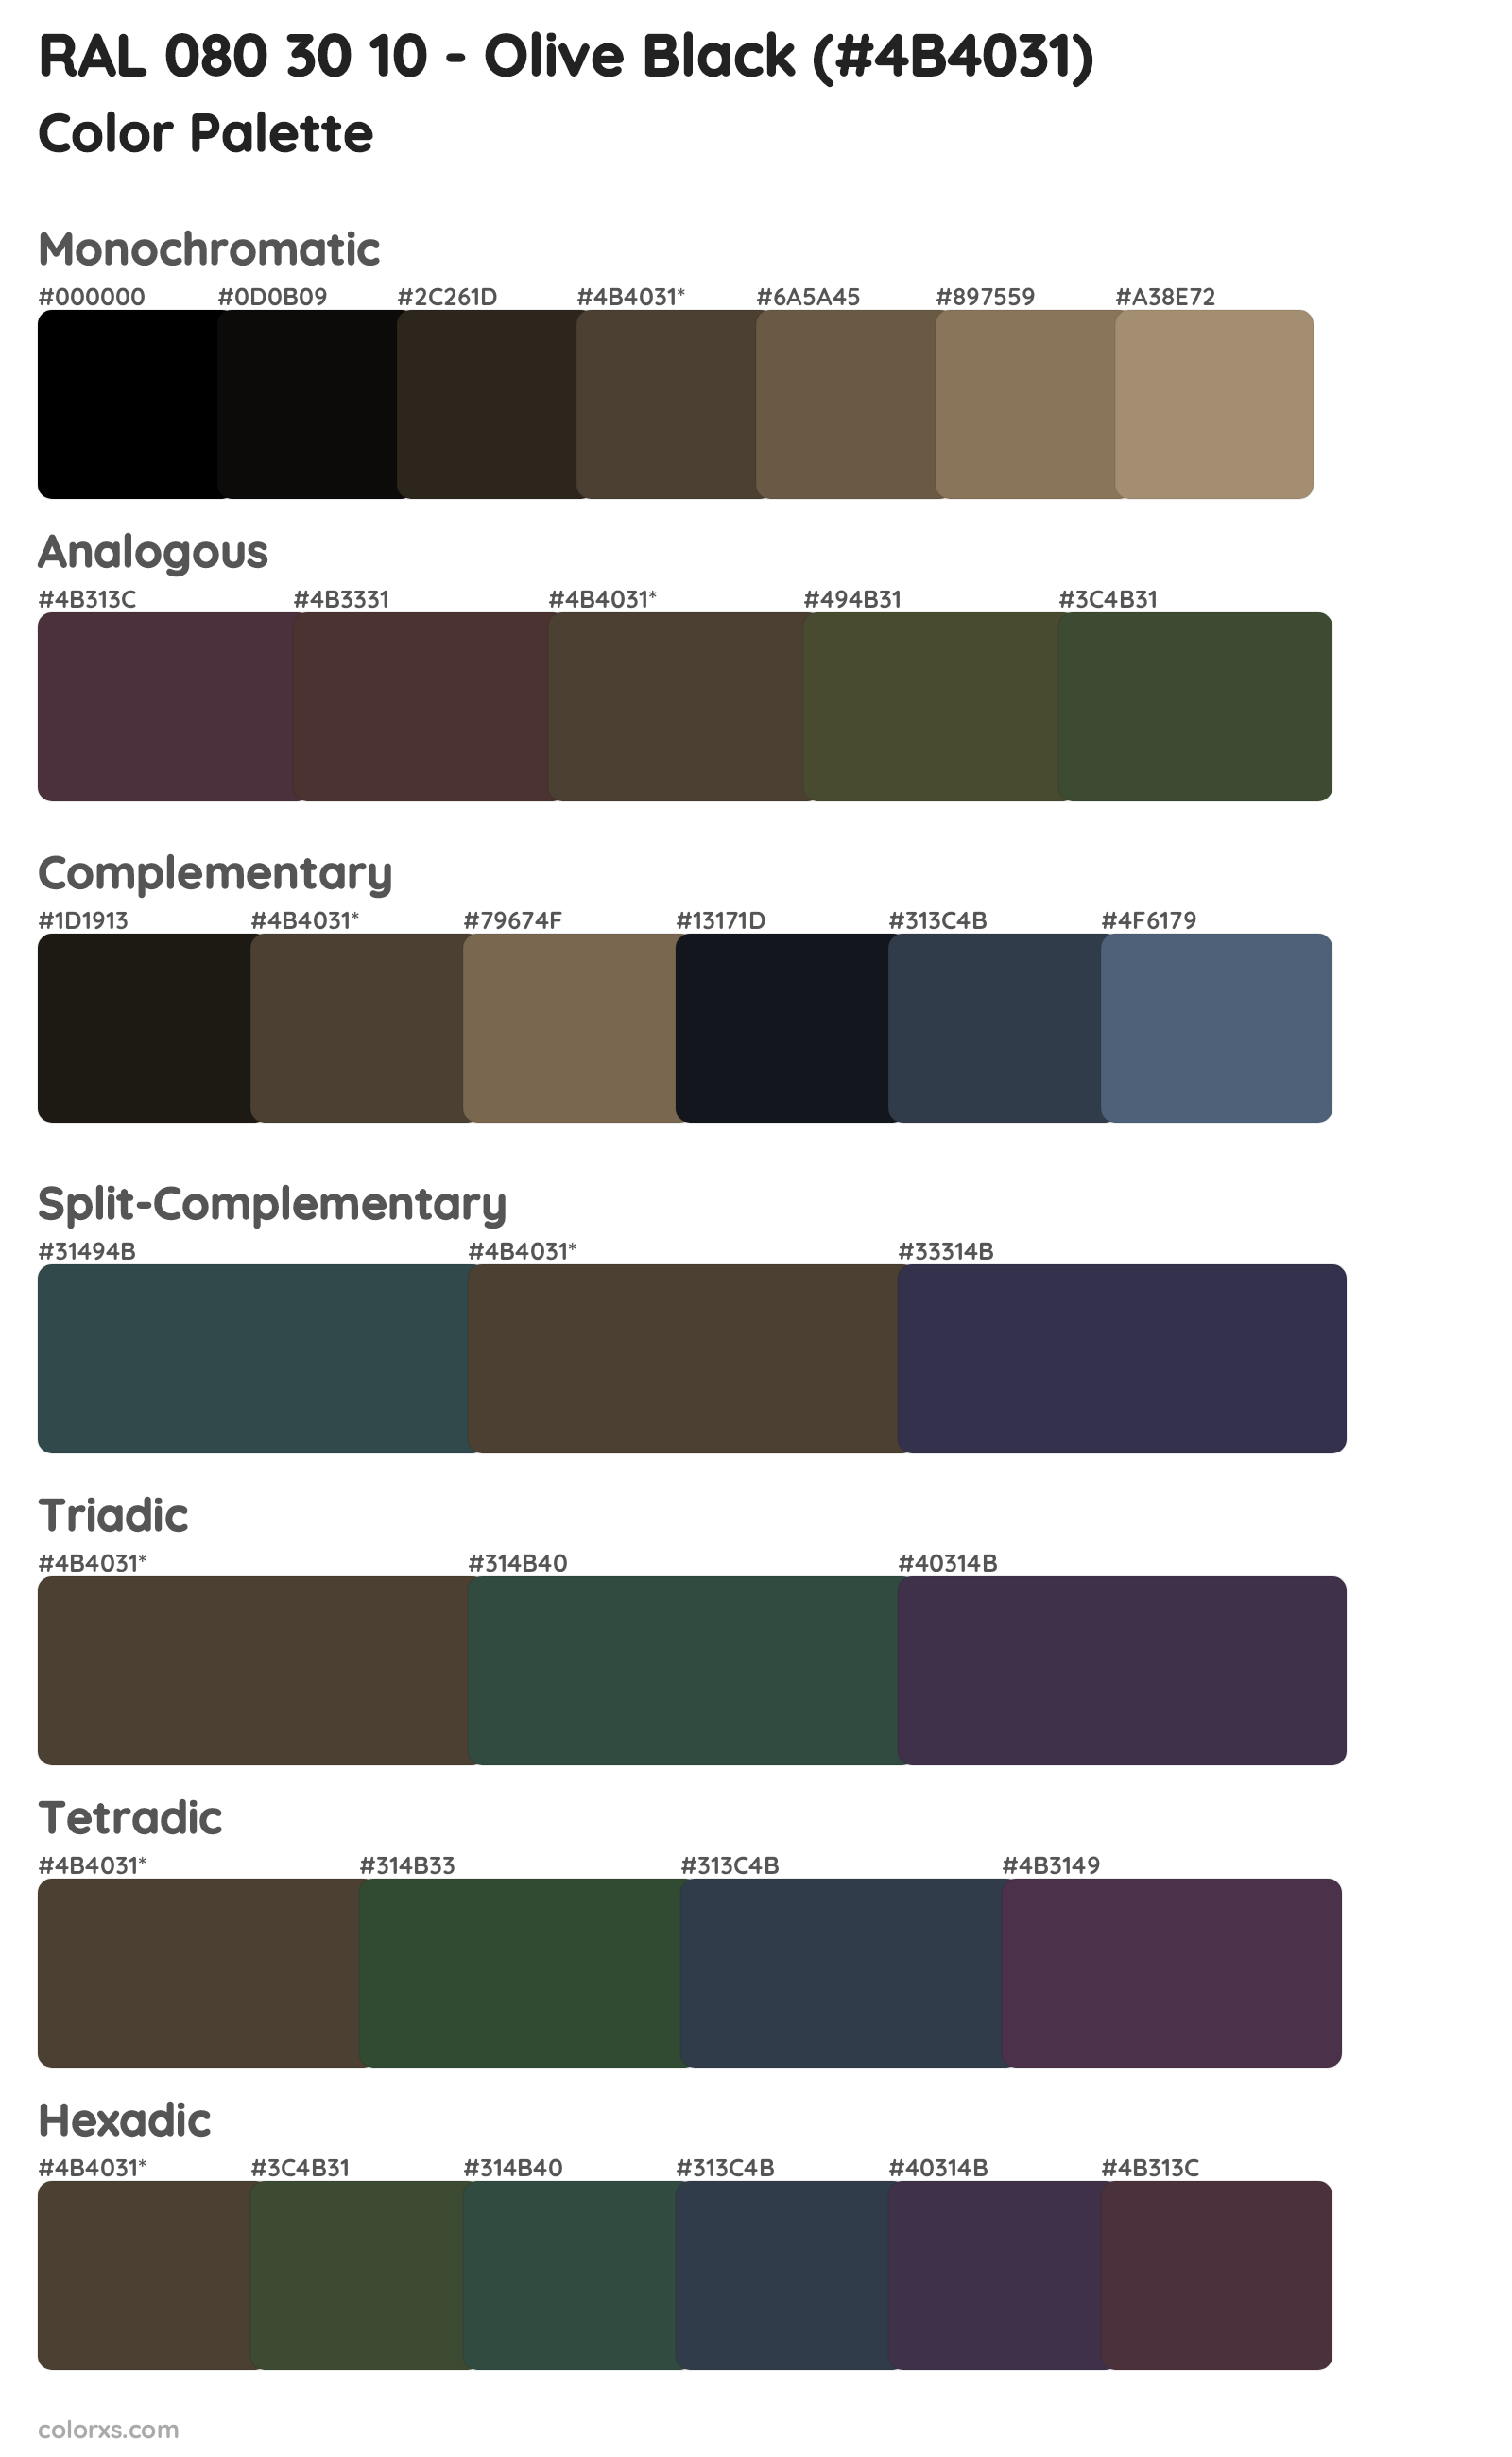 RAL 080 30 10 - Olive Black Color Scheme Palettes